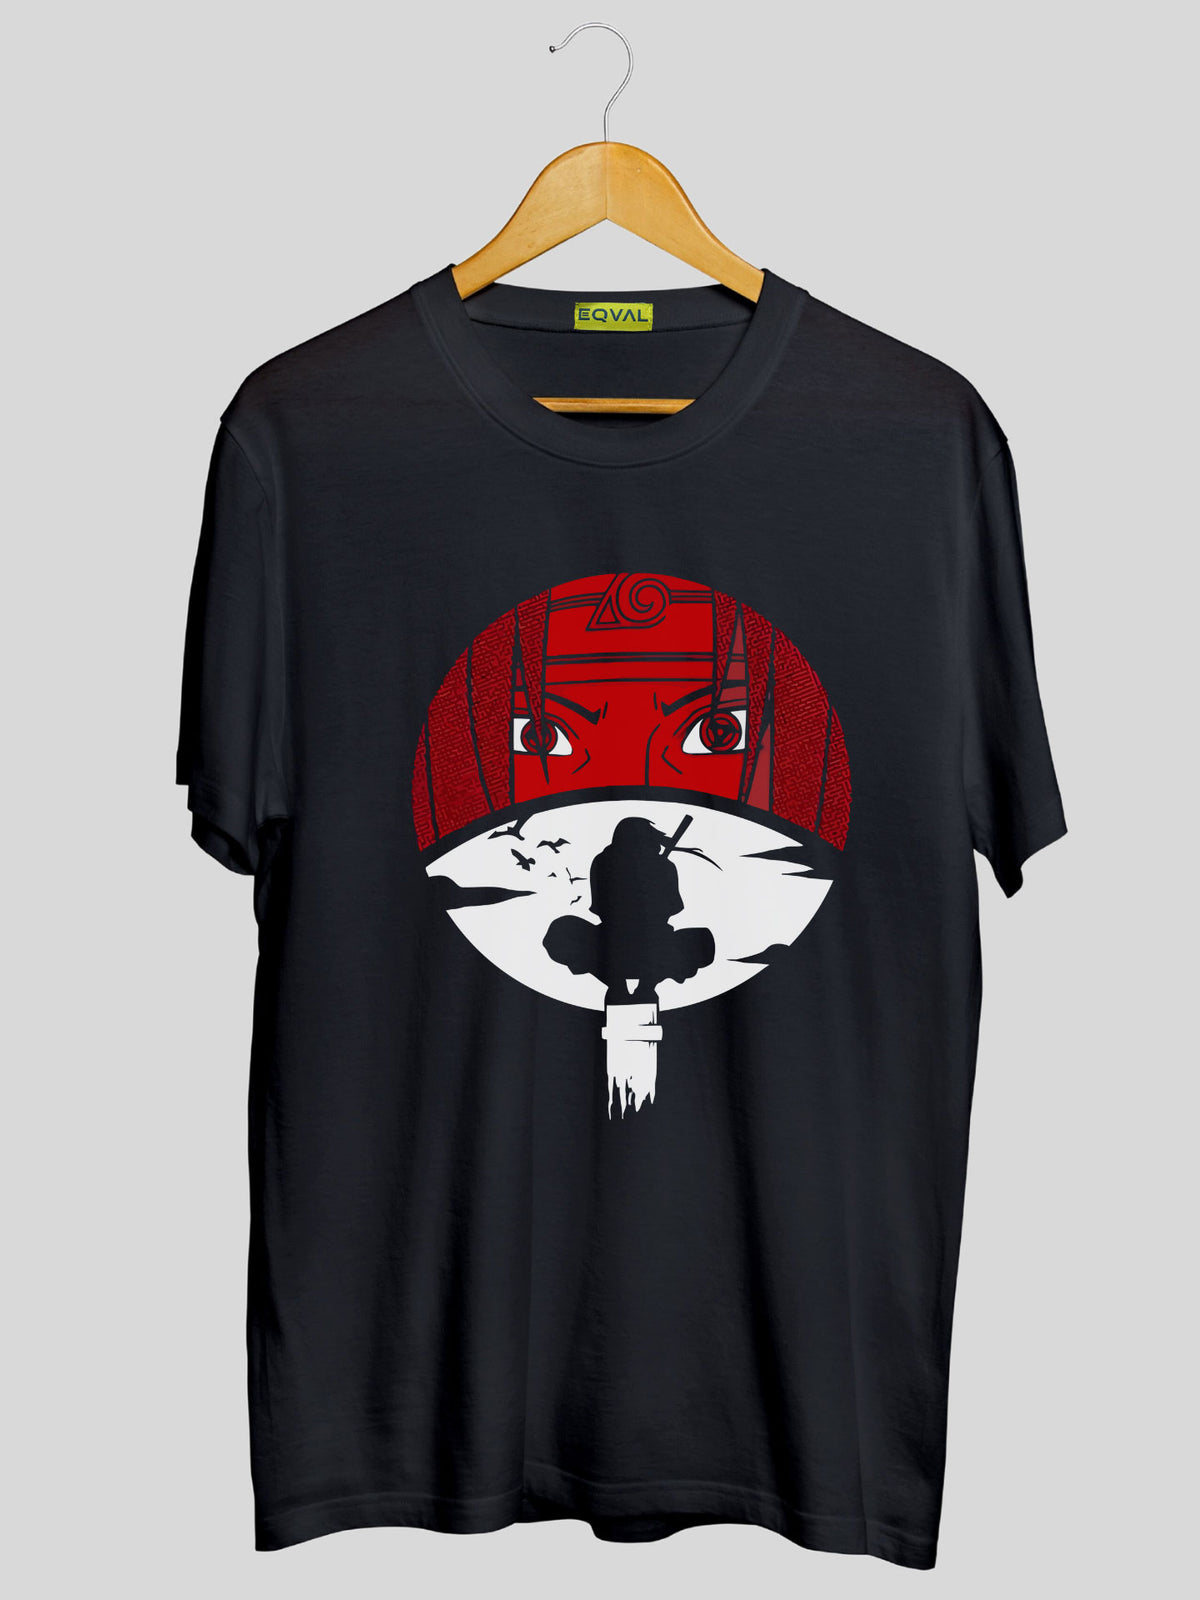 Men's Black itachi uchiha Printed T-shirt